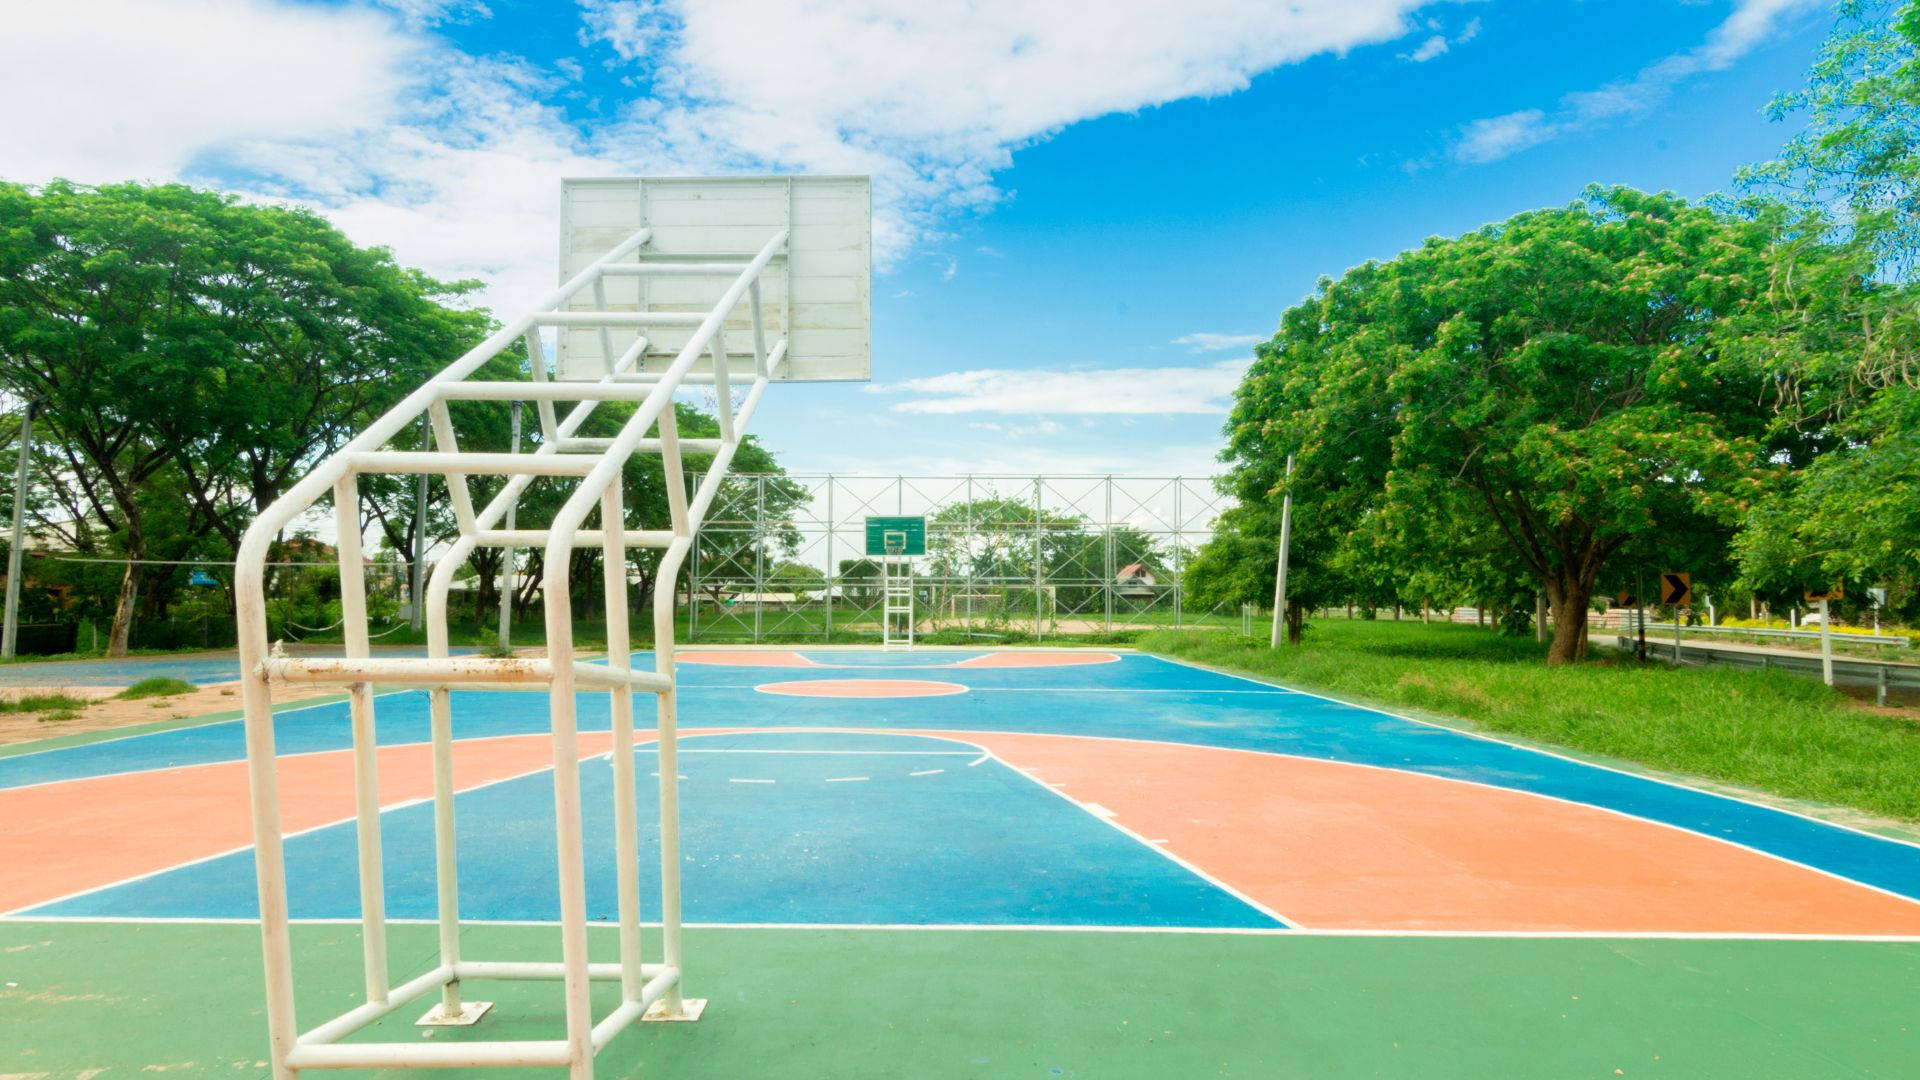 Open Basketball Court In Summer Wallpaper